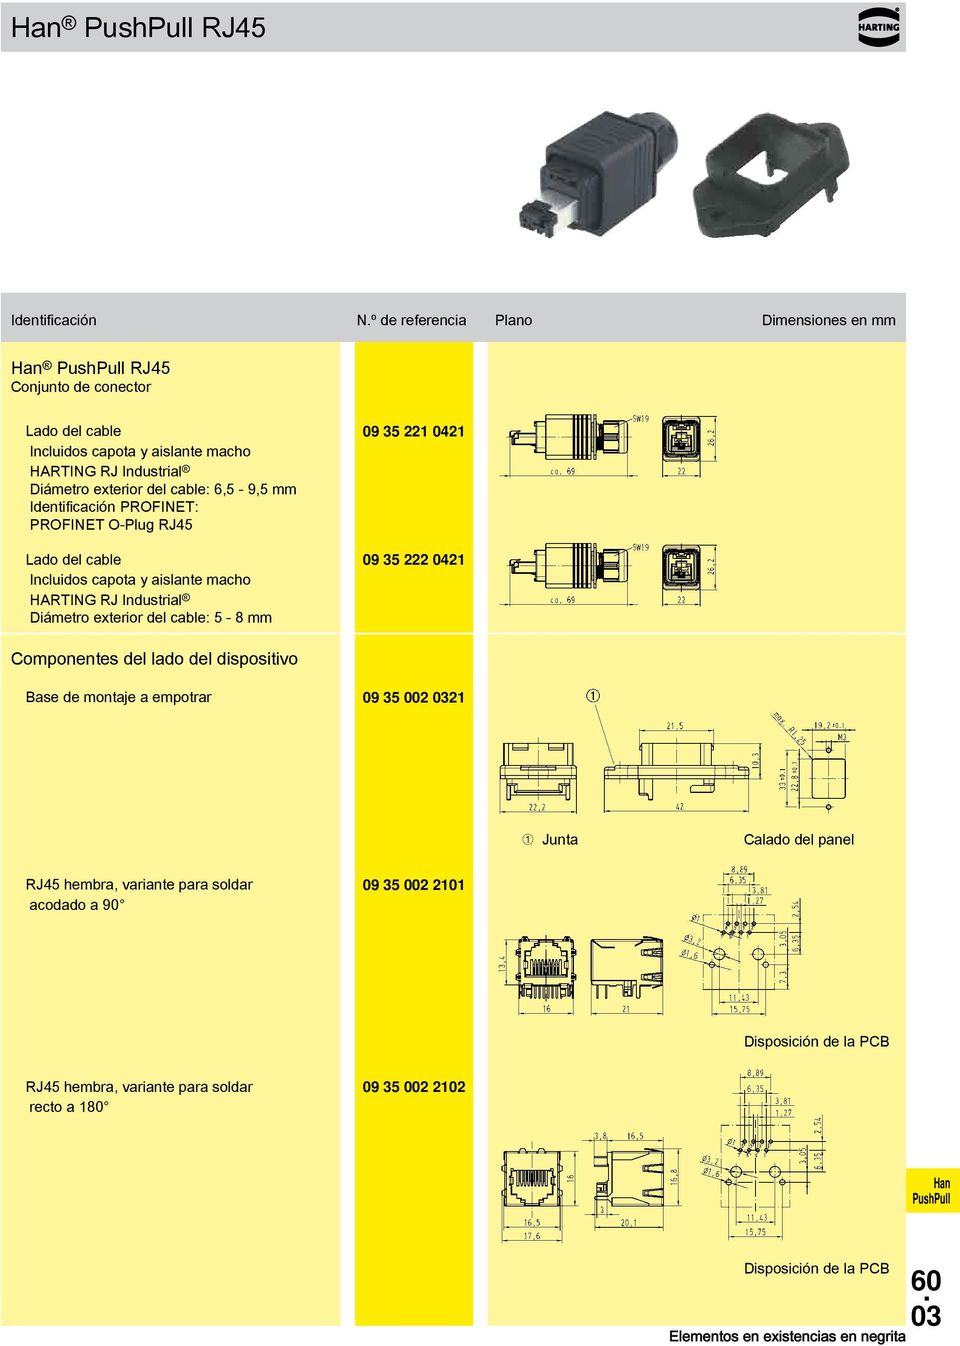 PROFINET: PROFINET O-Plug RJ45 HARTING RJ Industrial Diámetro exterior del cable: 5-8 mm 09 35 221 0421 09 35 222 0421 Componentes del lado del